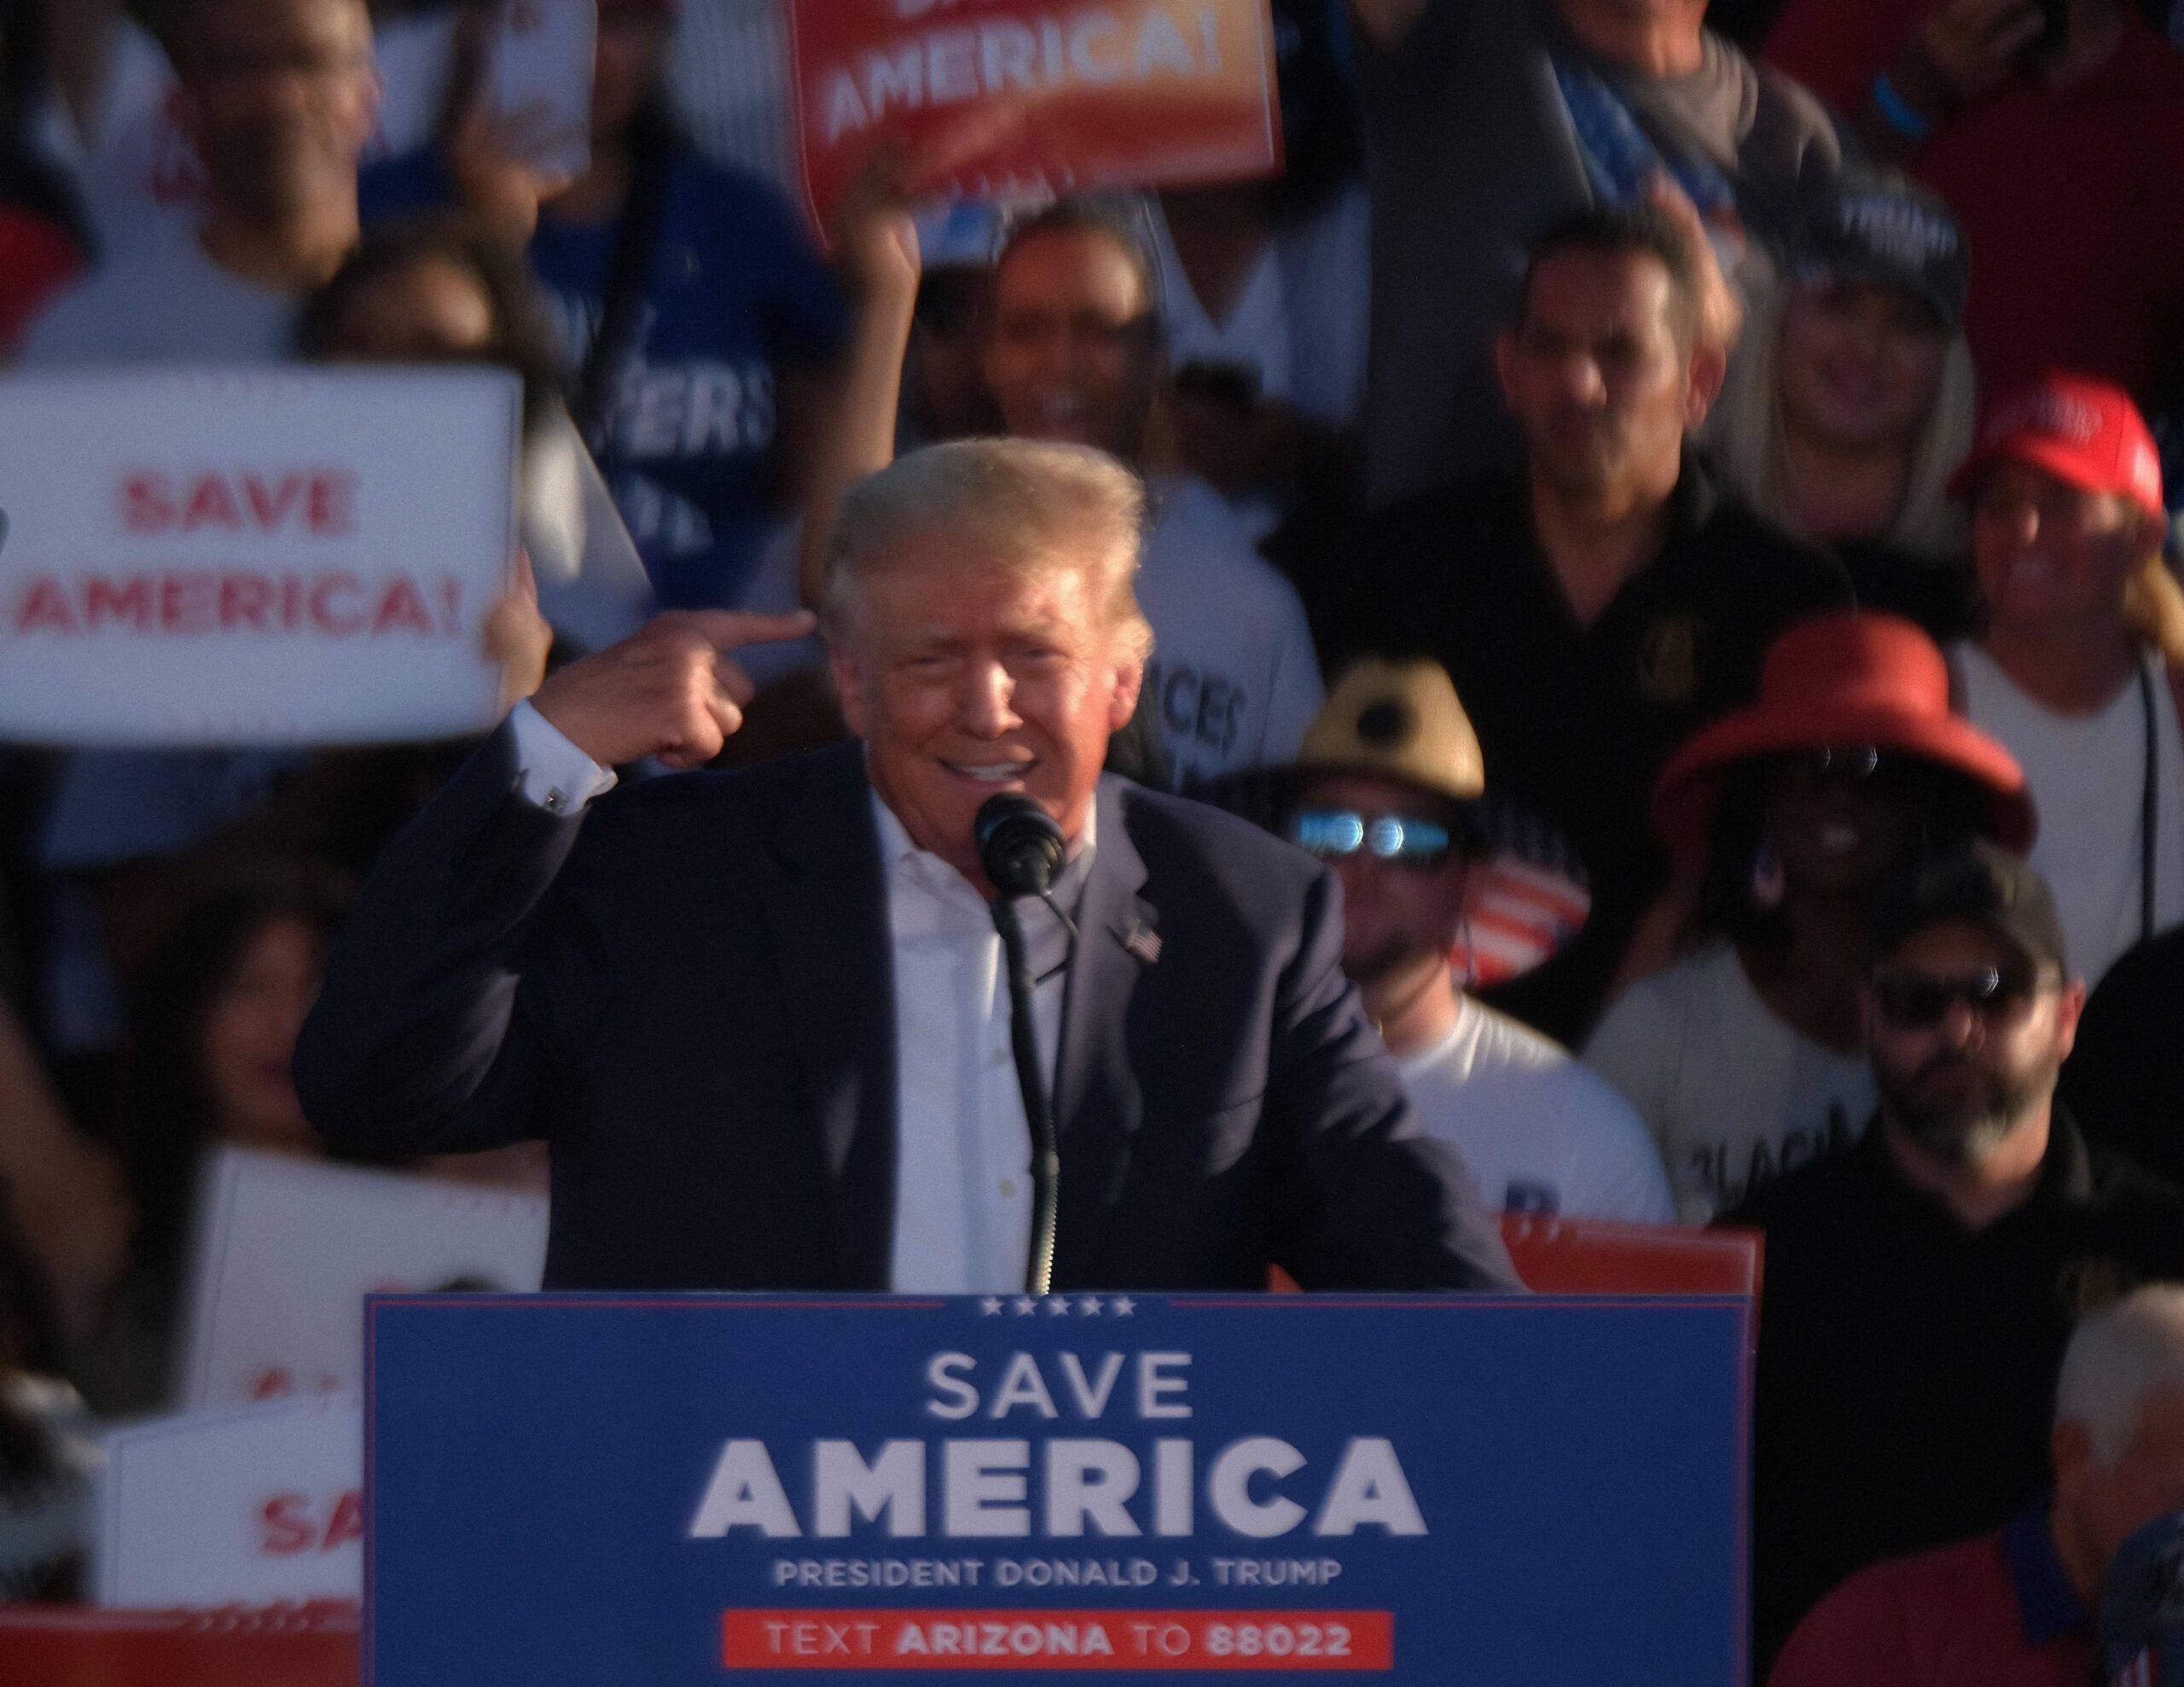 Donald Trump campaigns in Arizona